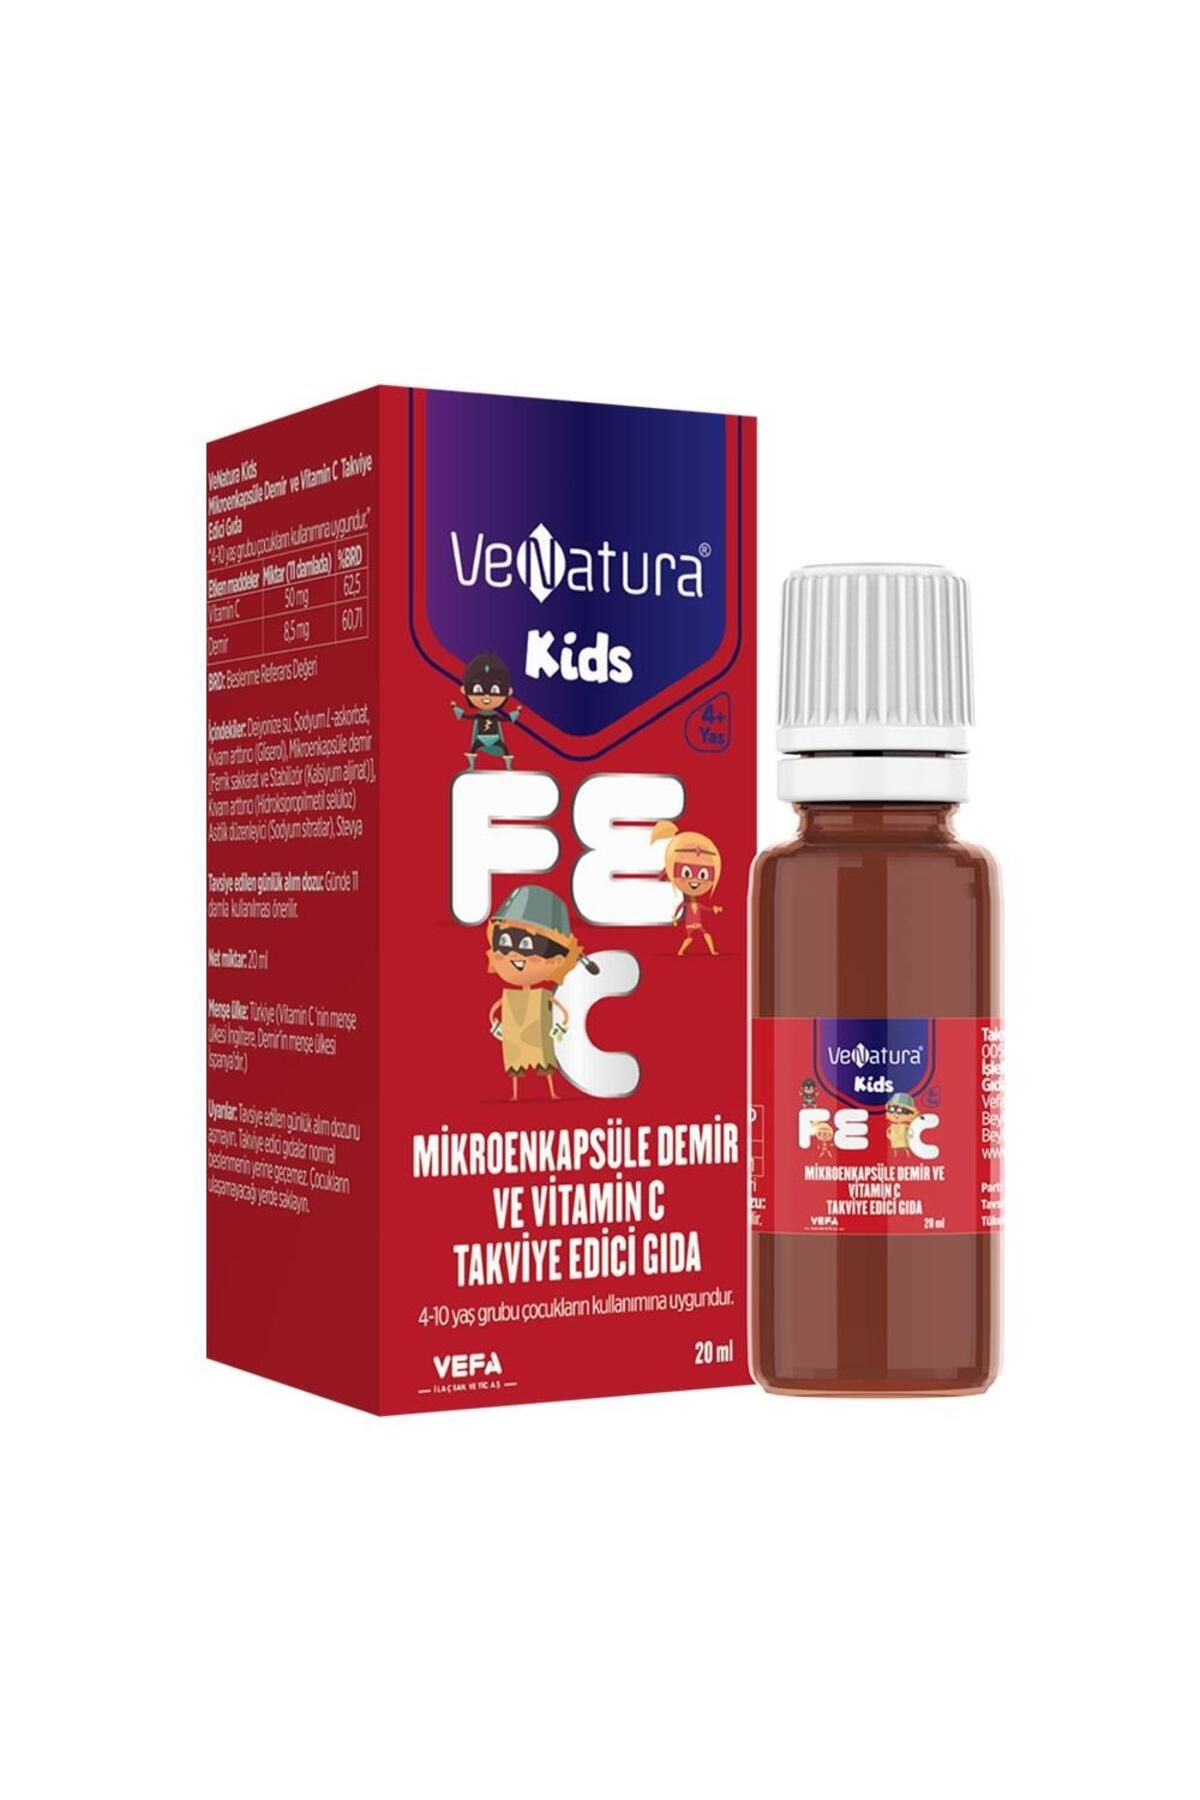 Venatura Kids Mikroenkapsüle Demir Ve Vitamin C 20 ml